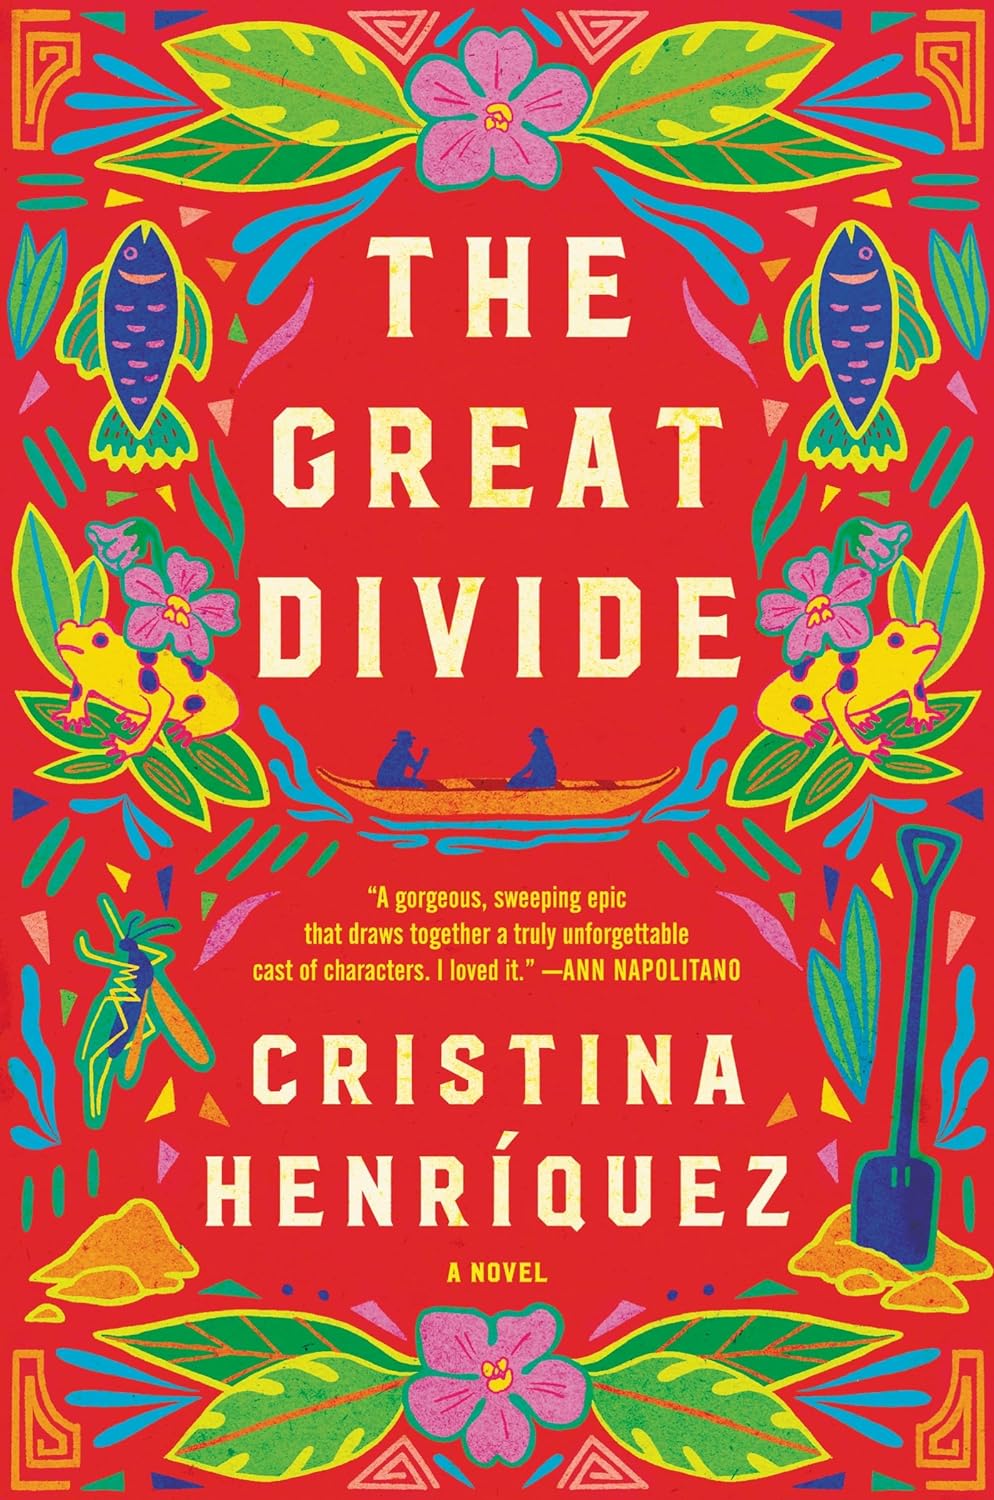 The Great Divide [Cristina Henriquez]